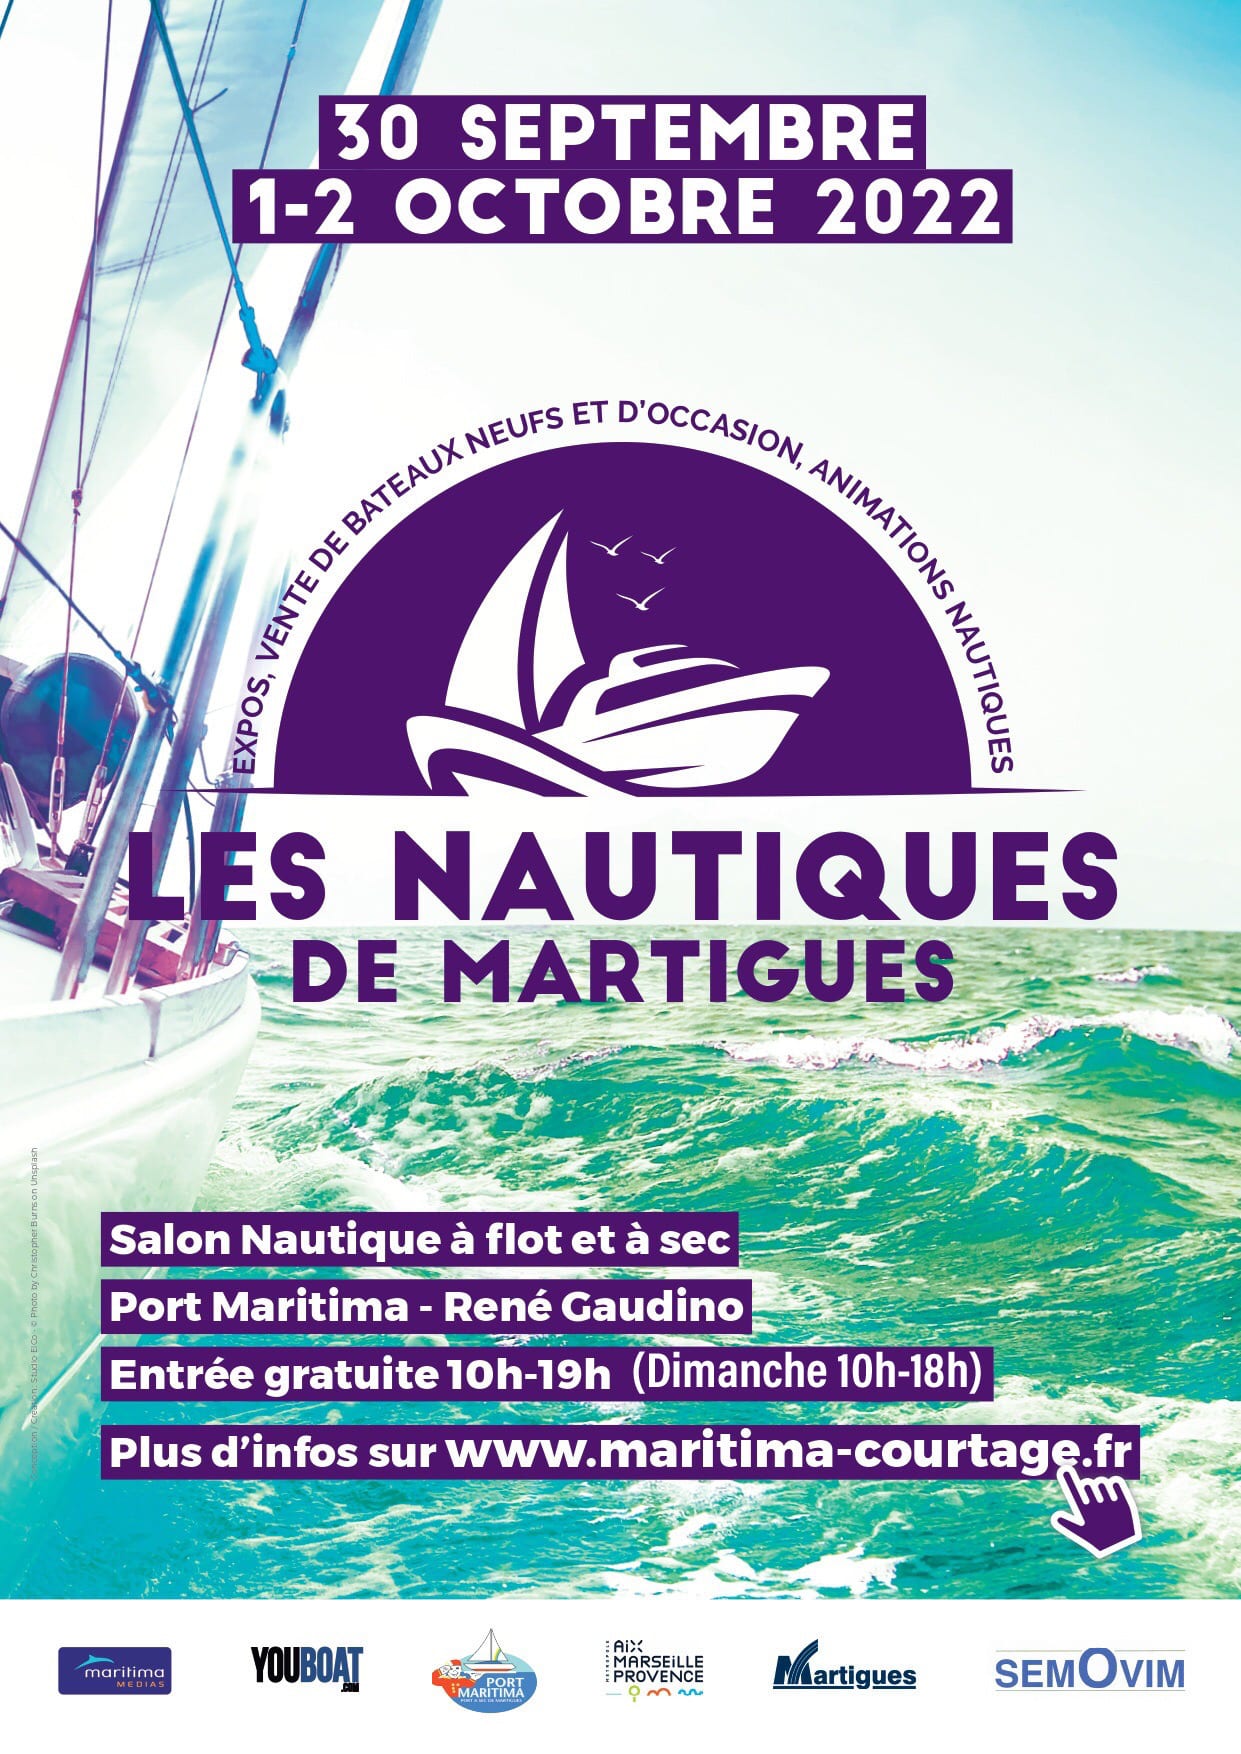 أحداث Martigues البحرية 2022 مع إزالة ساحة الخردة البحرية